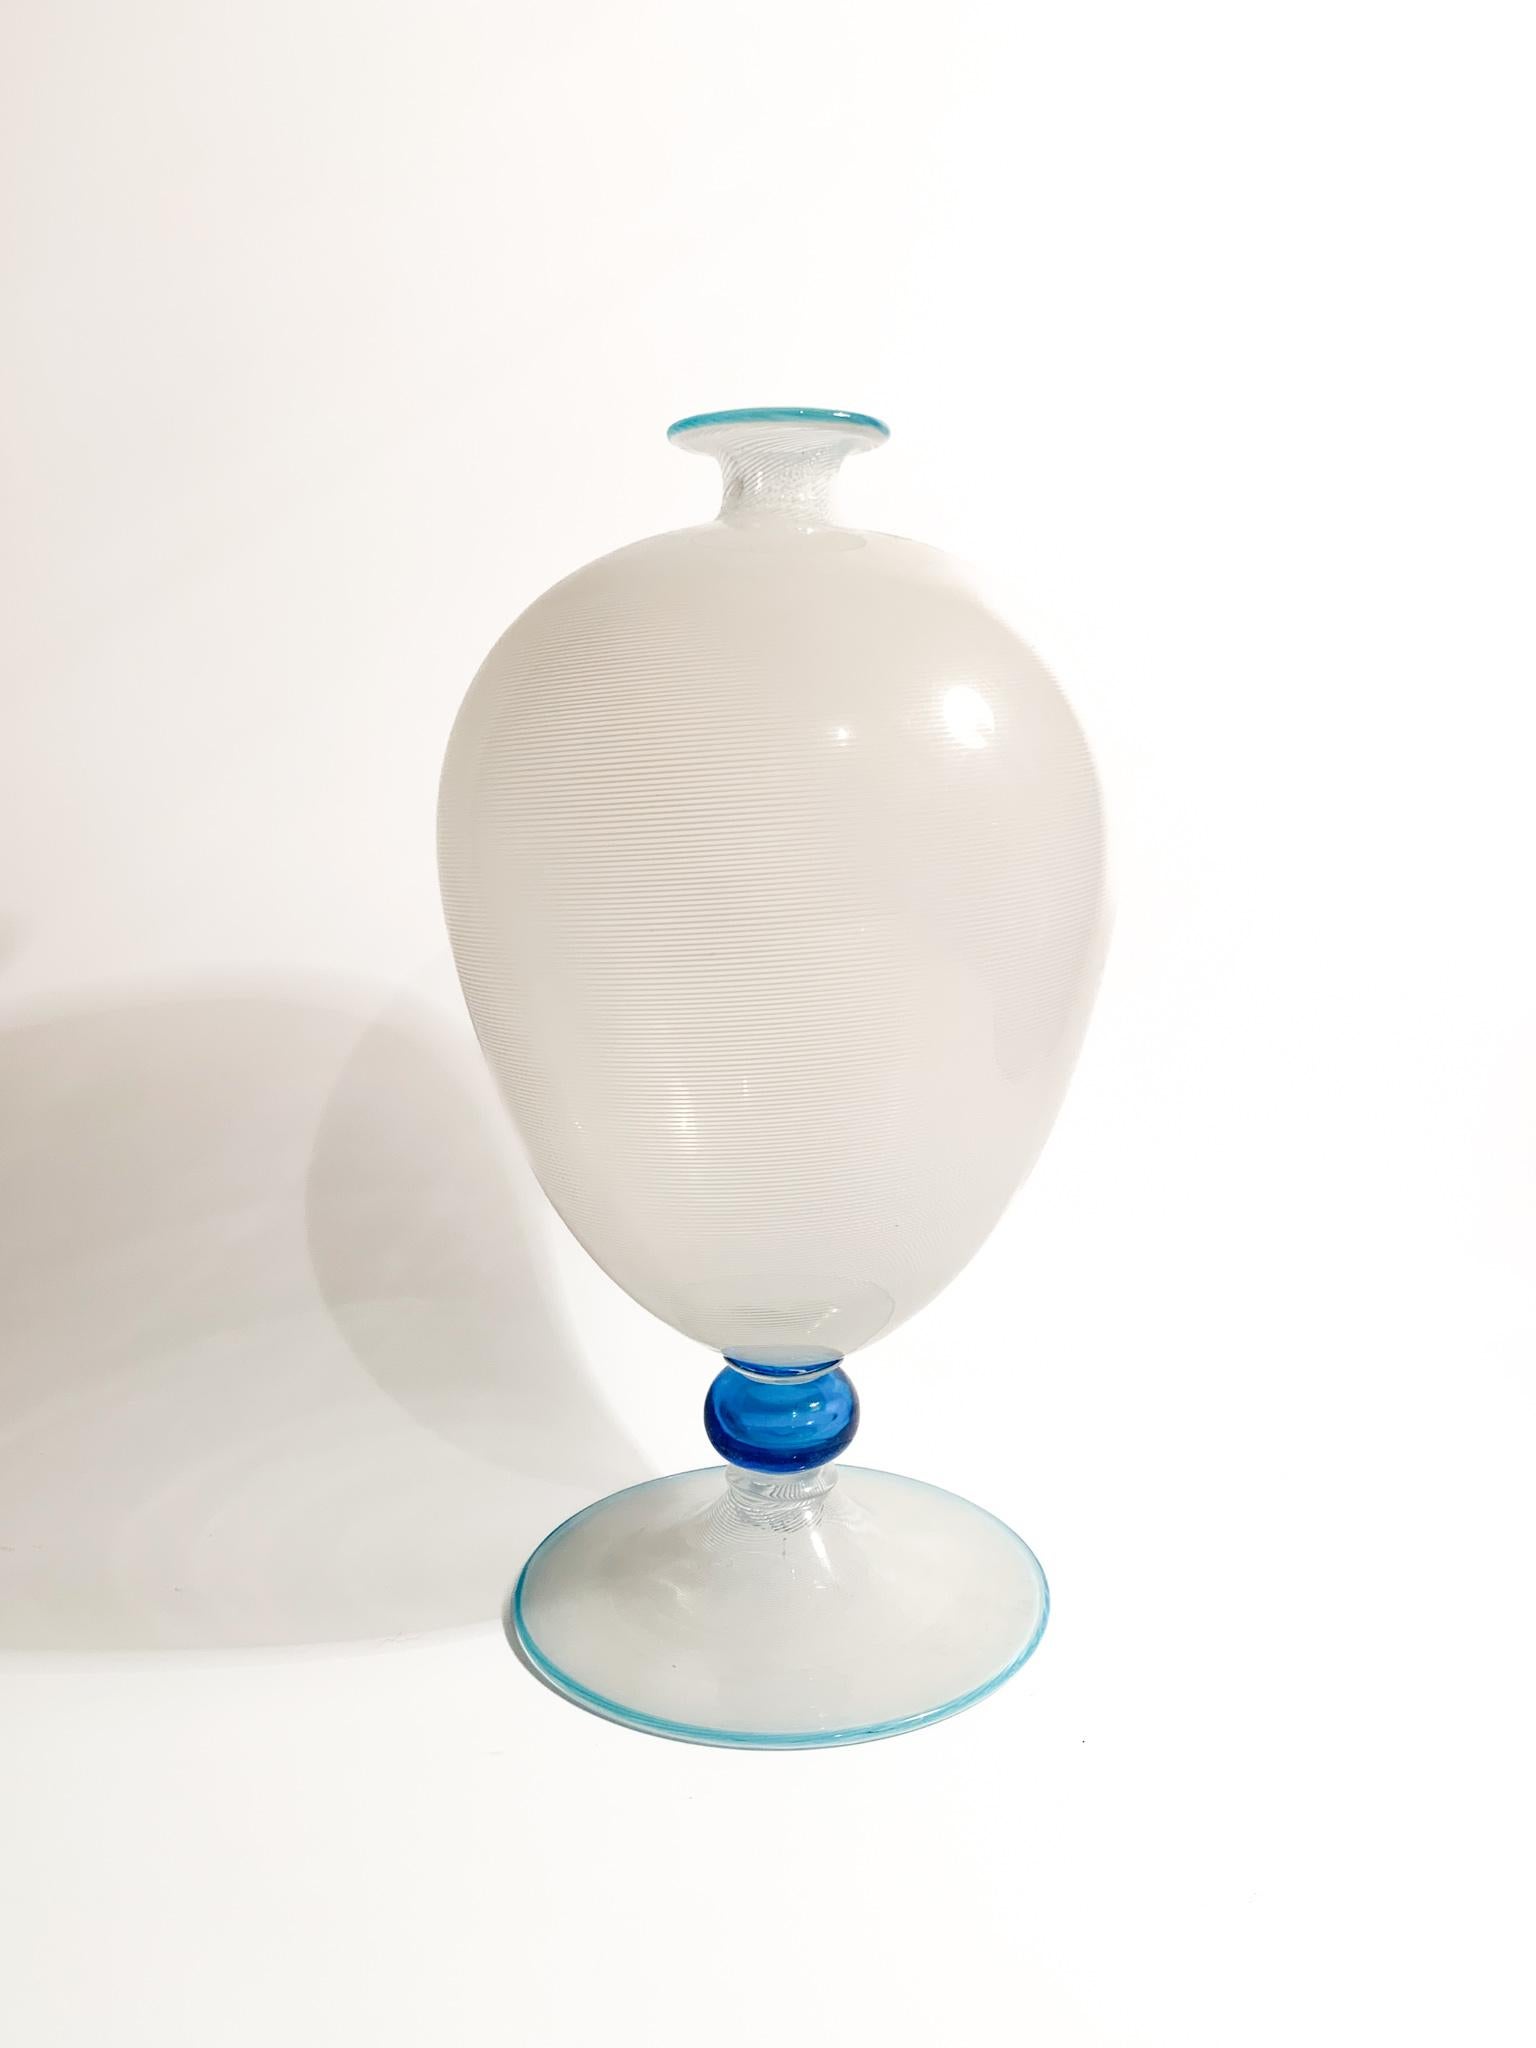 Vase Modell Veronese aus weißem und hellblauem Murano-Glas, hergestellt mit der filigranen Technik von Barovier & Toso in den 1950er Jahren

Ø 16 cm h 30 cm

Barovier&Toso ist eine Glasmanufaktur, die im 20. Jahrhundert für ihre handgefertigten